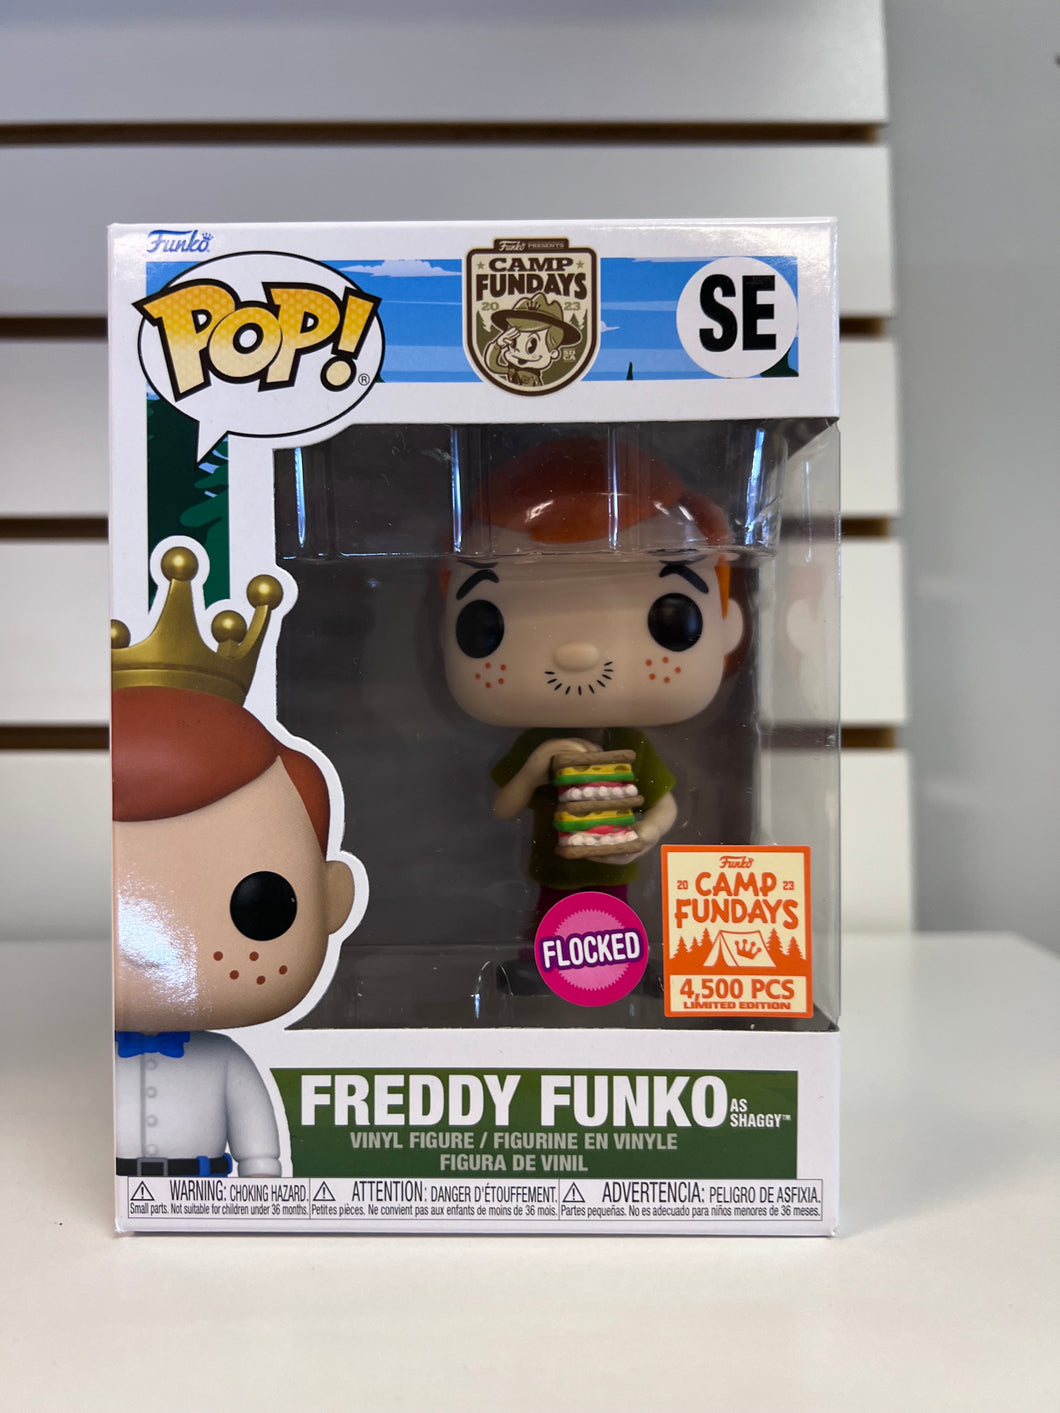 Funko Pop Freddy Funko as Shaggy